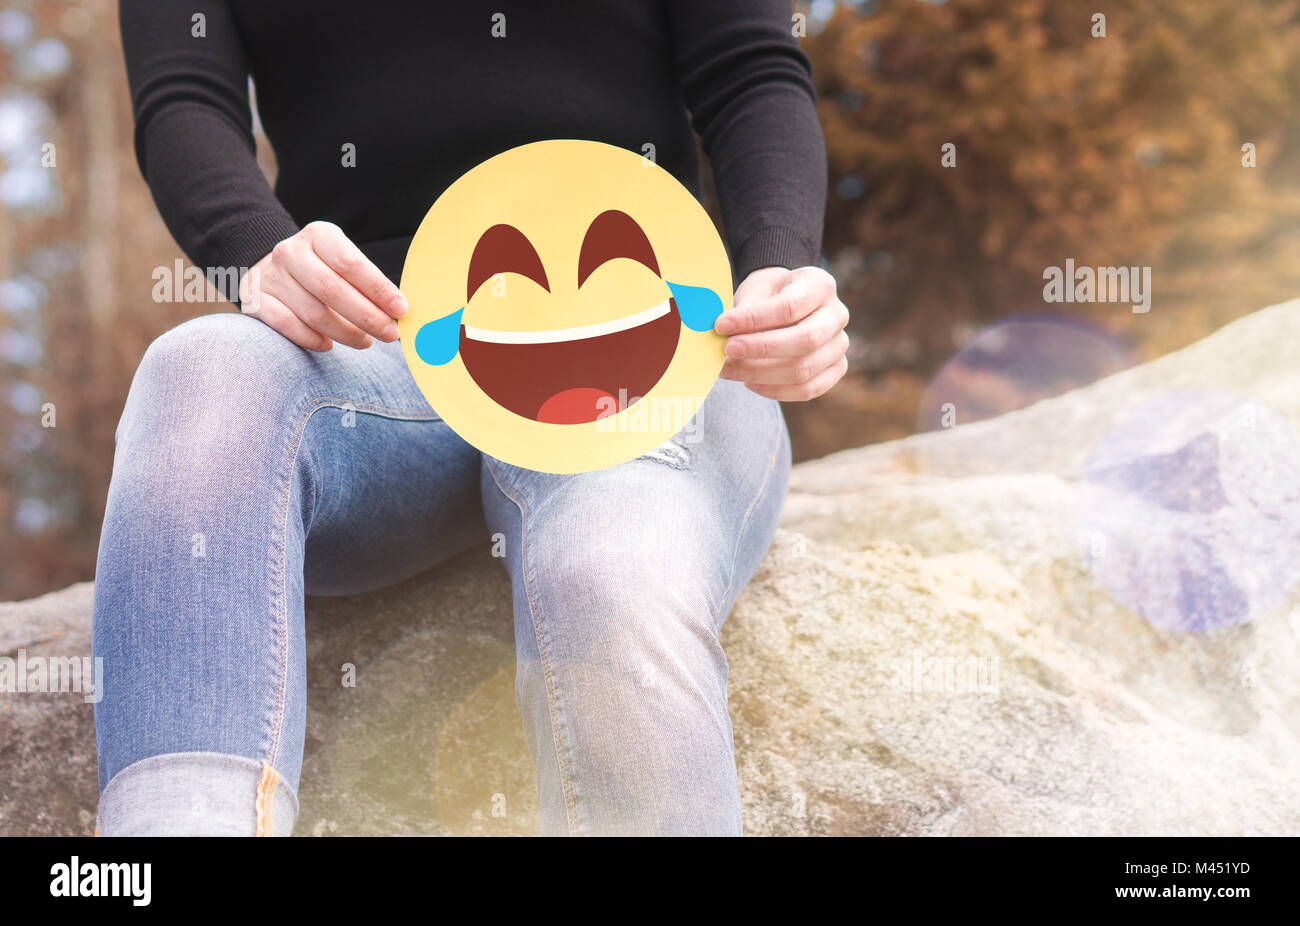 Laughing emoticono con lágrimas de alegría. Mujer divirtiéndose fuera y manteniendo un alegre papel impreso cara sonriente. Comunicación feliz y sonriente icono. Foto de stock